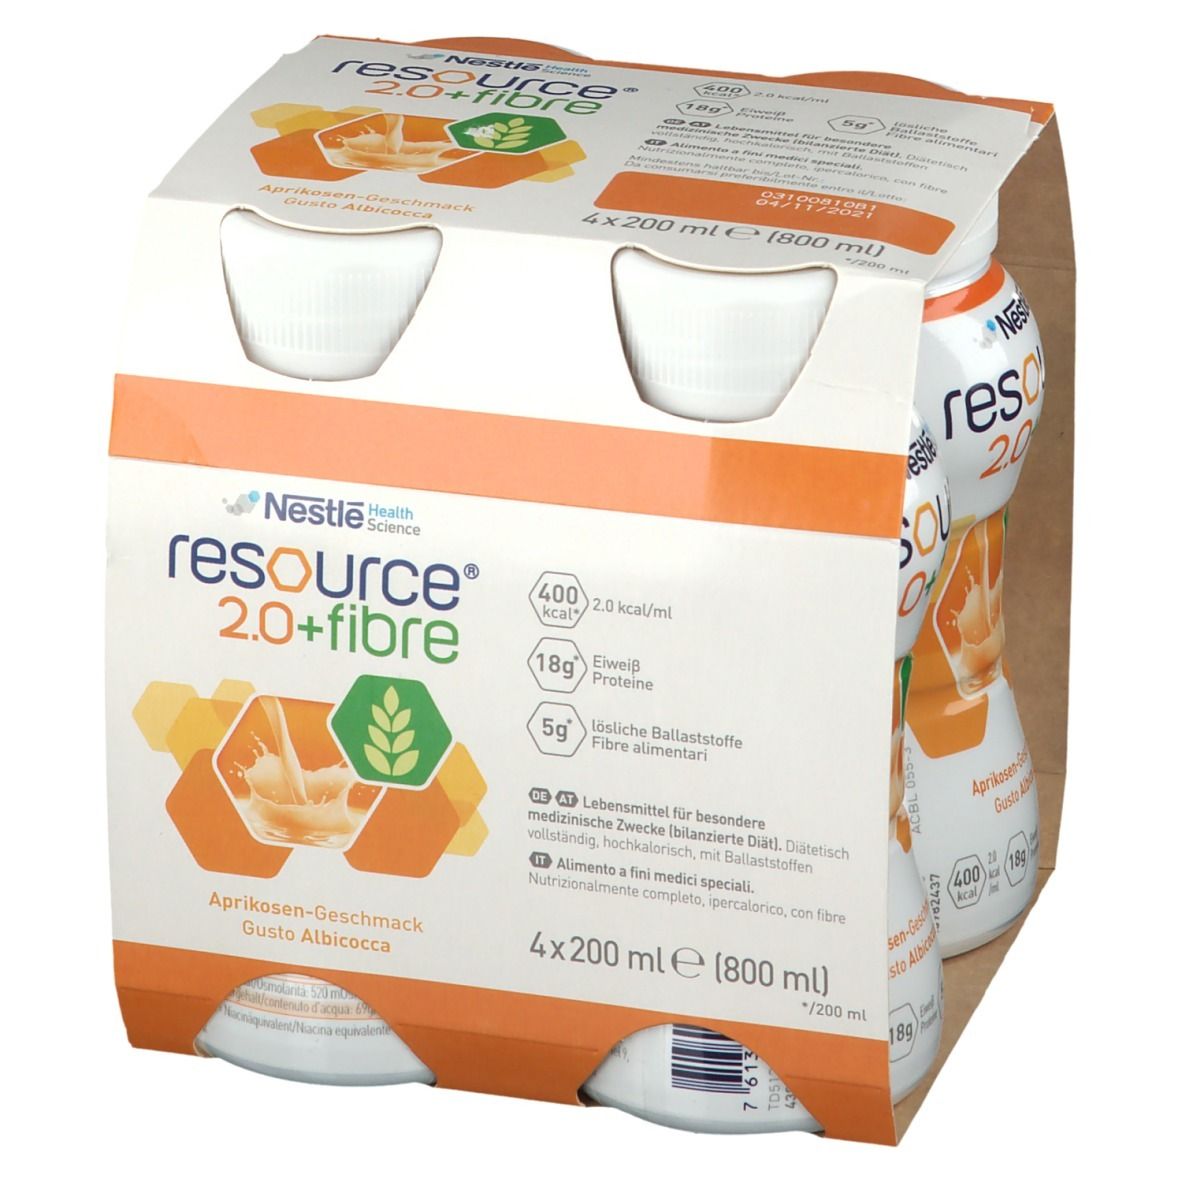 RESOURCE® 2.0 + fibre Aprikose